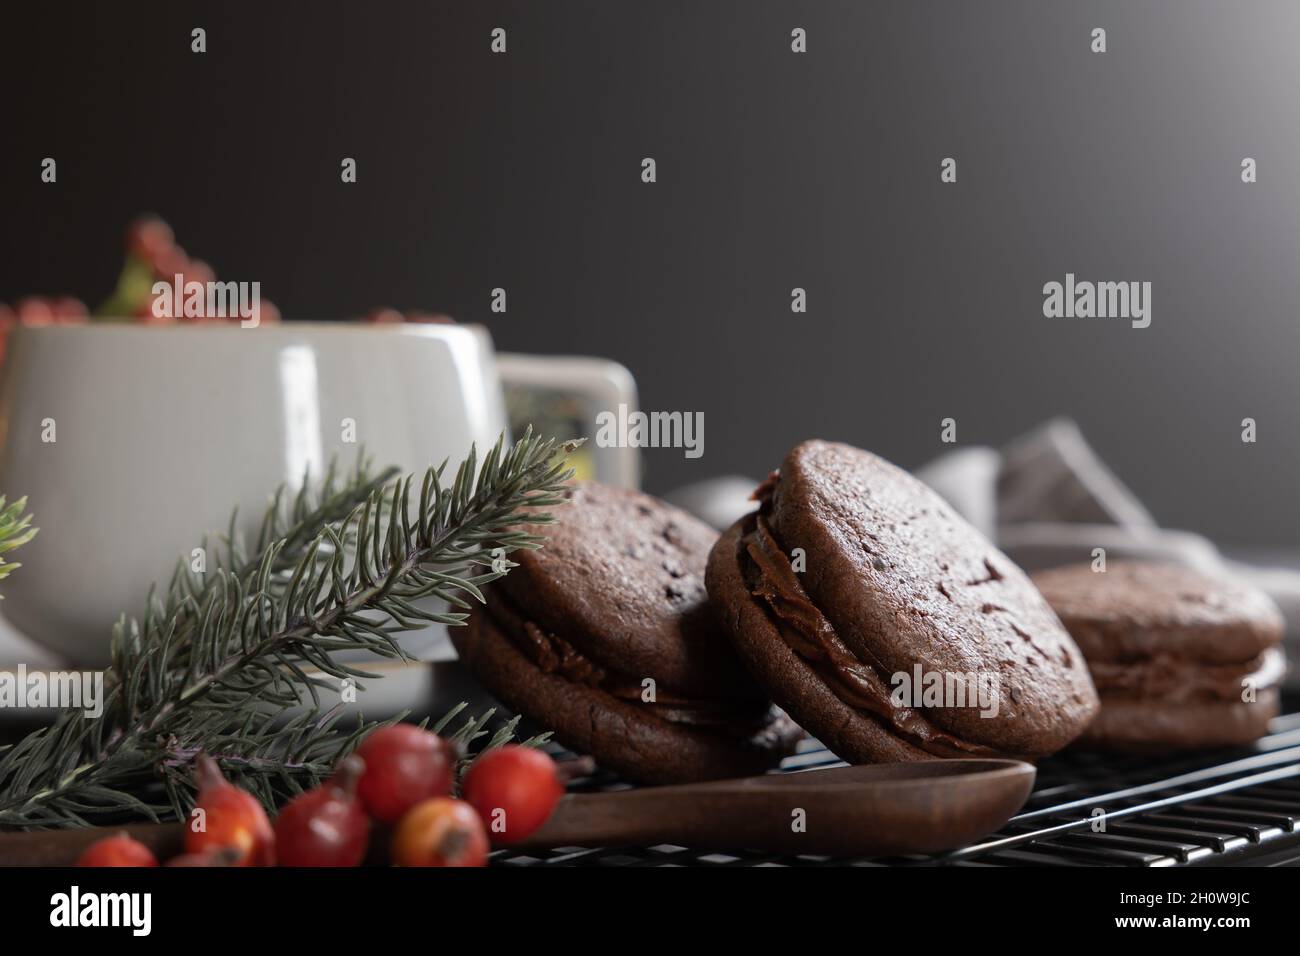 Gâteau de Noël de biscuits sandwich au café et au chocolat avec bordure de baies de noël et de quartiers à feuilles persistantes Banque D'Images